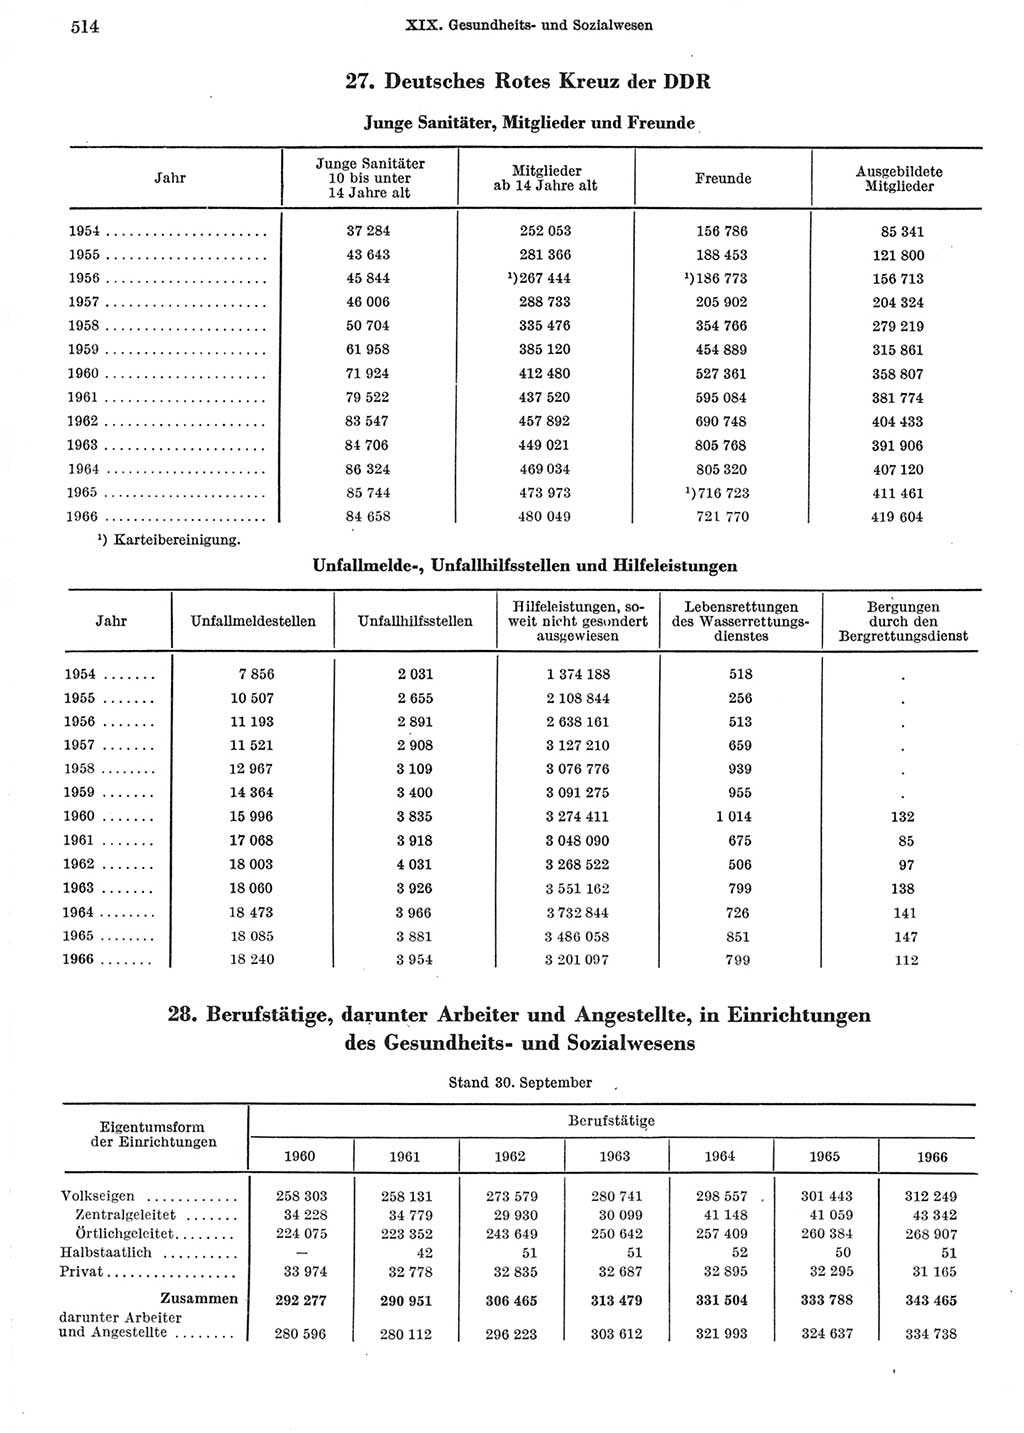 Statistisches Jahrbuch der Deutschen Demokratischen Republik (DDR) 1967, Seite 514 (Stat. Jb. DDR 1967, S. 514)